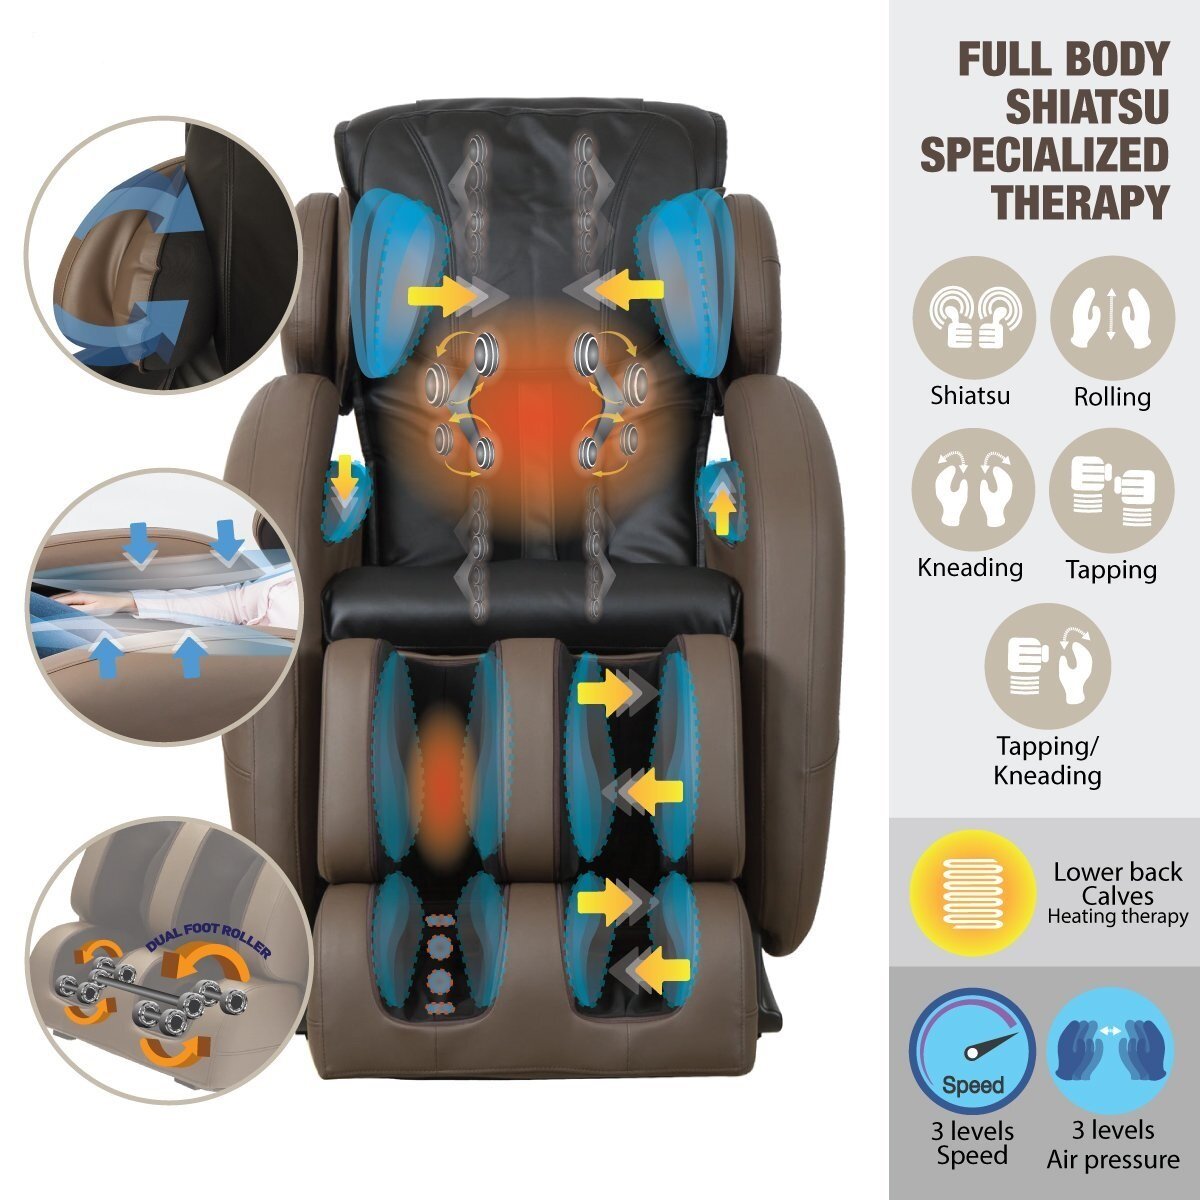 Một chiếc ghế massage phù hợp sẽ mang đến nhiều lợi ích cho cơ thể bạn và gia đình